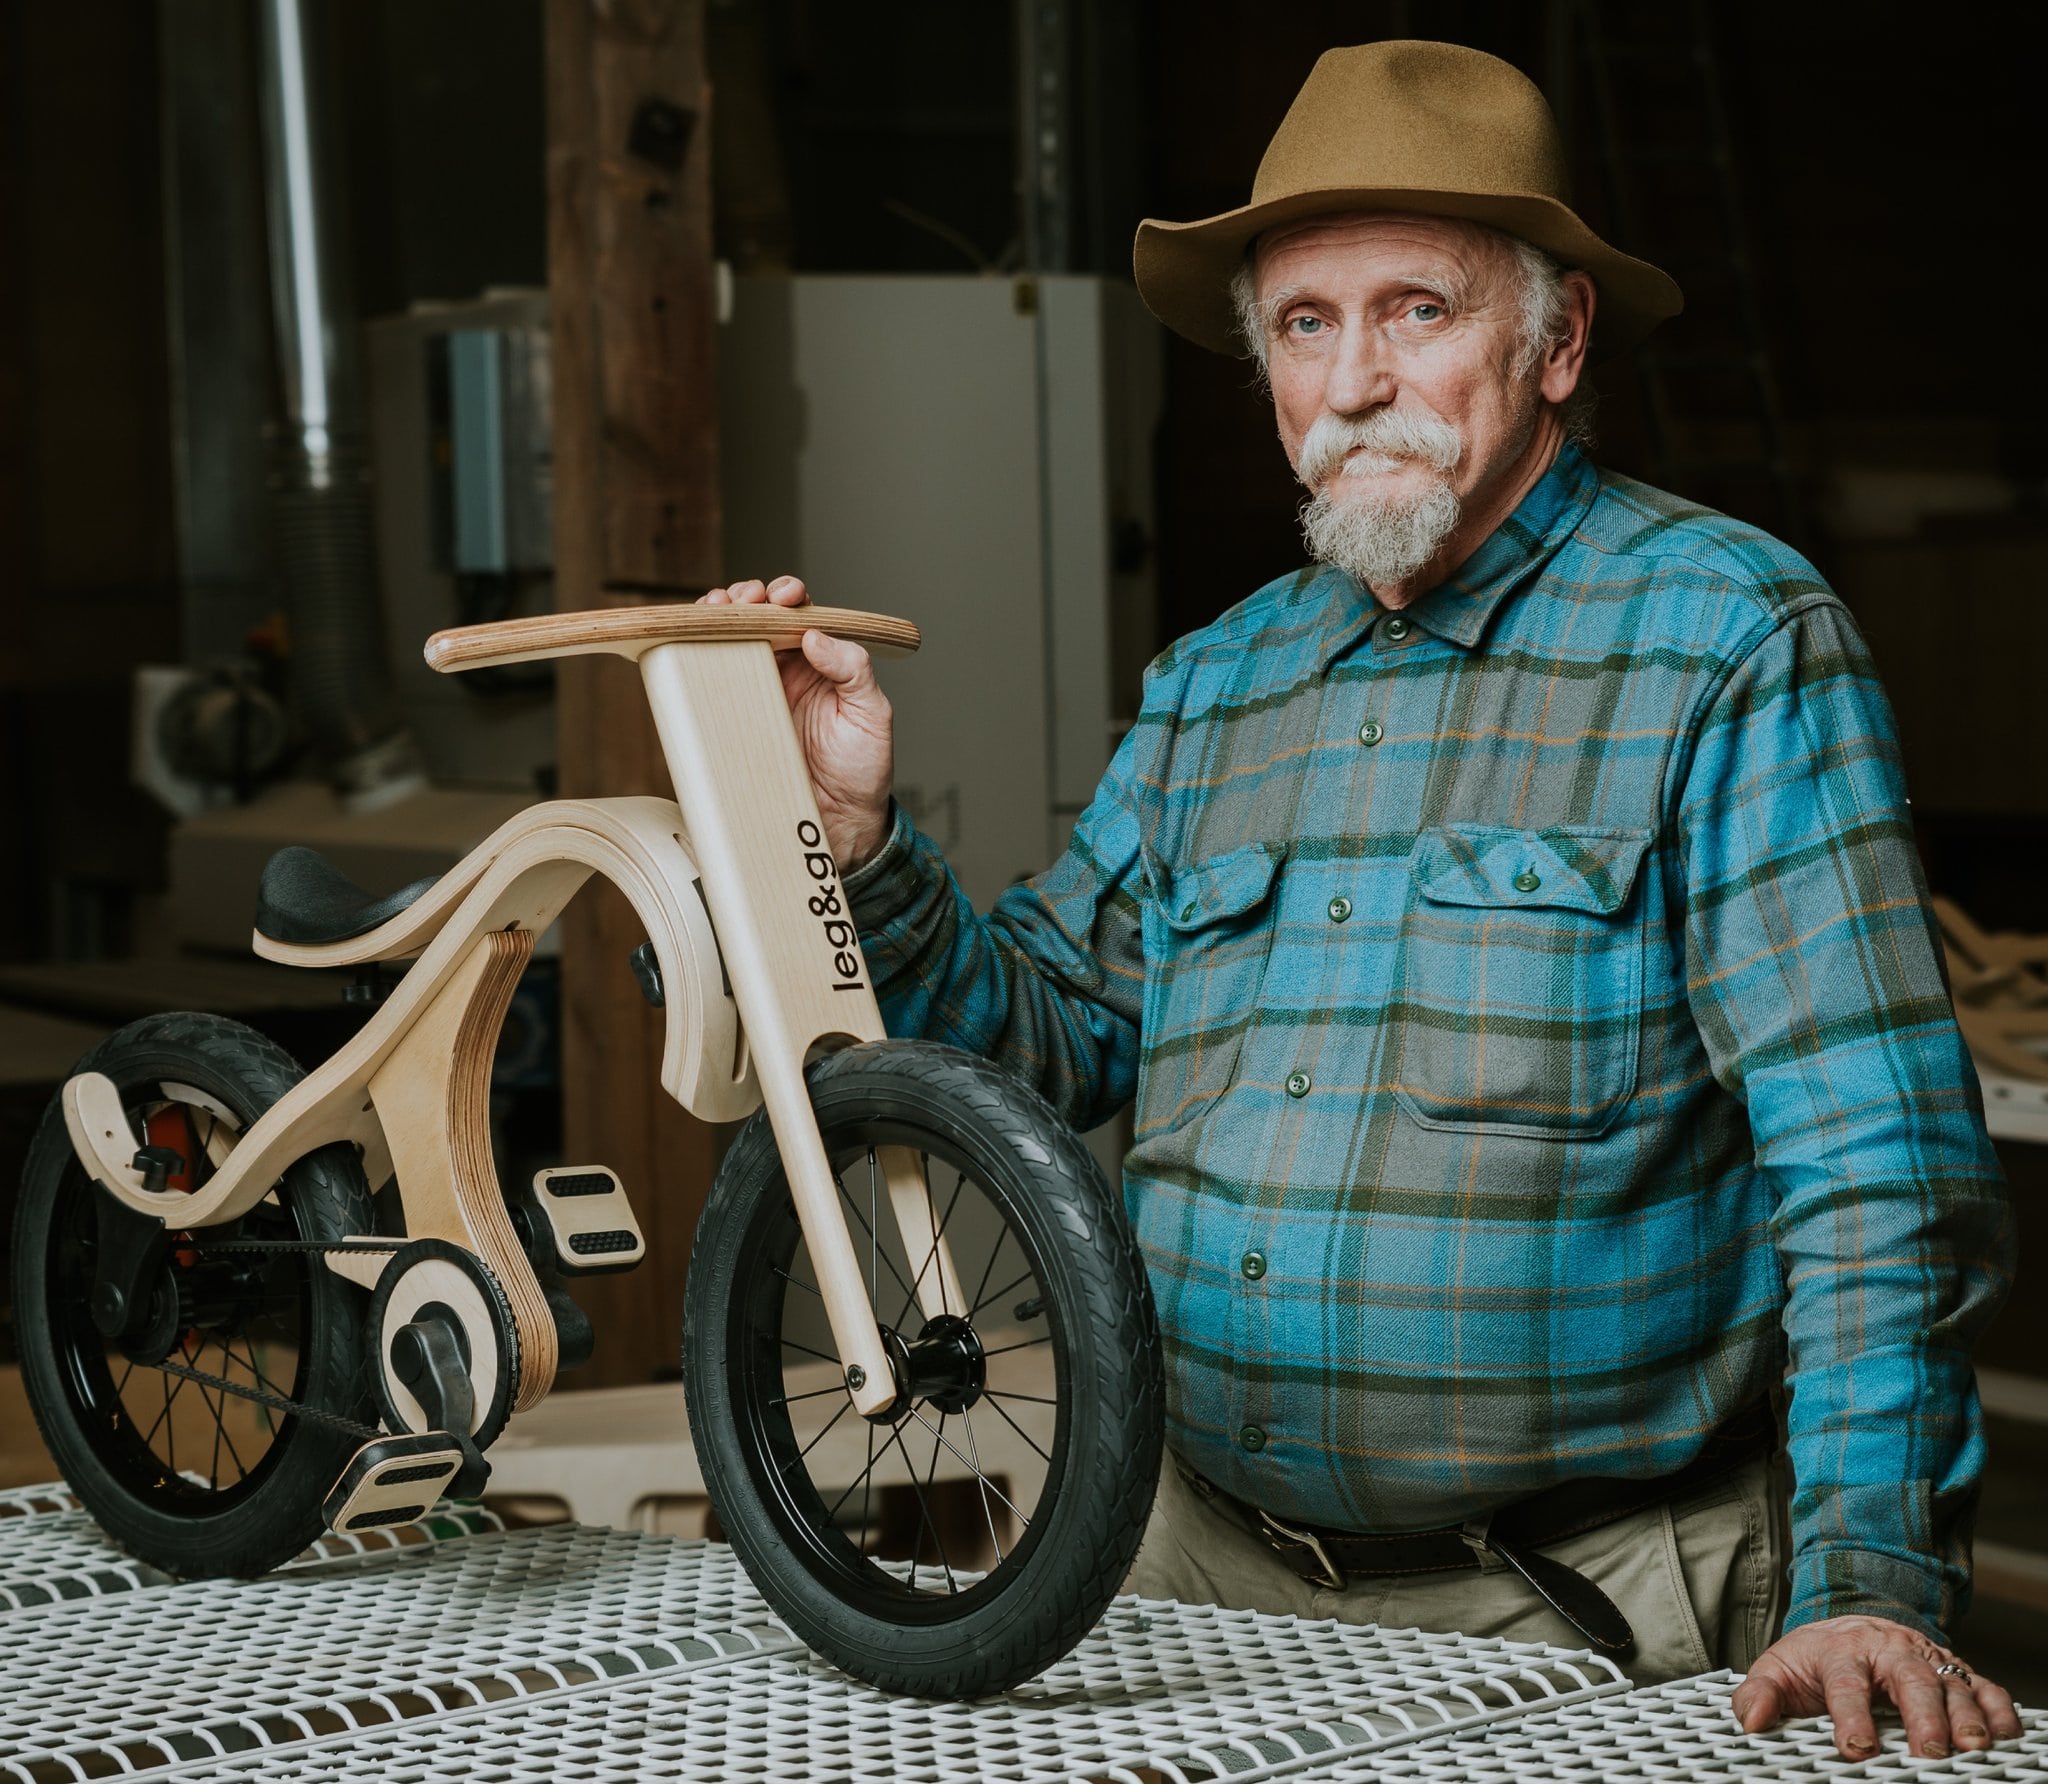 Extension "Vélo" pour Draisienne évolutive, en bois FSC • LOOVE